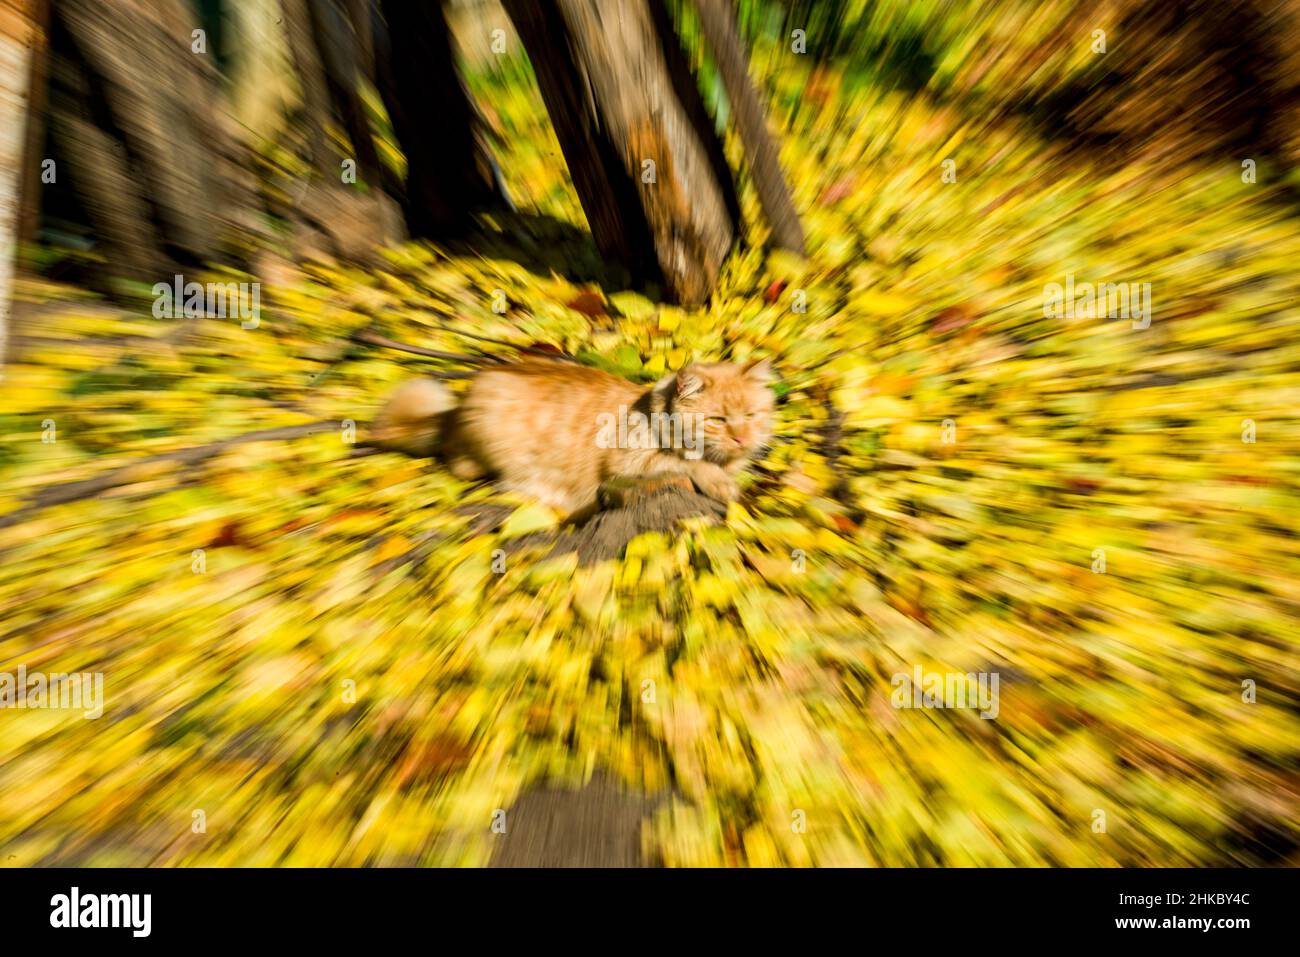 Eine flauschige gelbe Katze, die im Wirbel gelber Blätter konzentriert ist Stockfoto